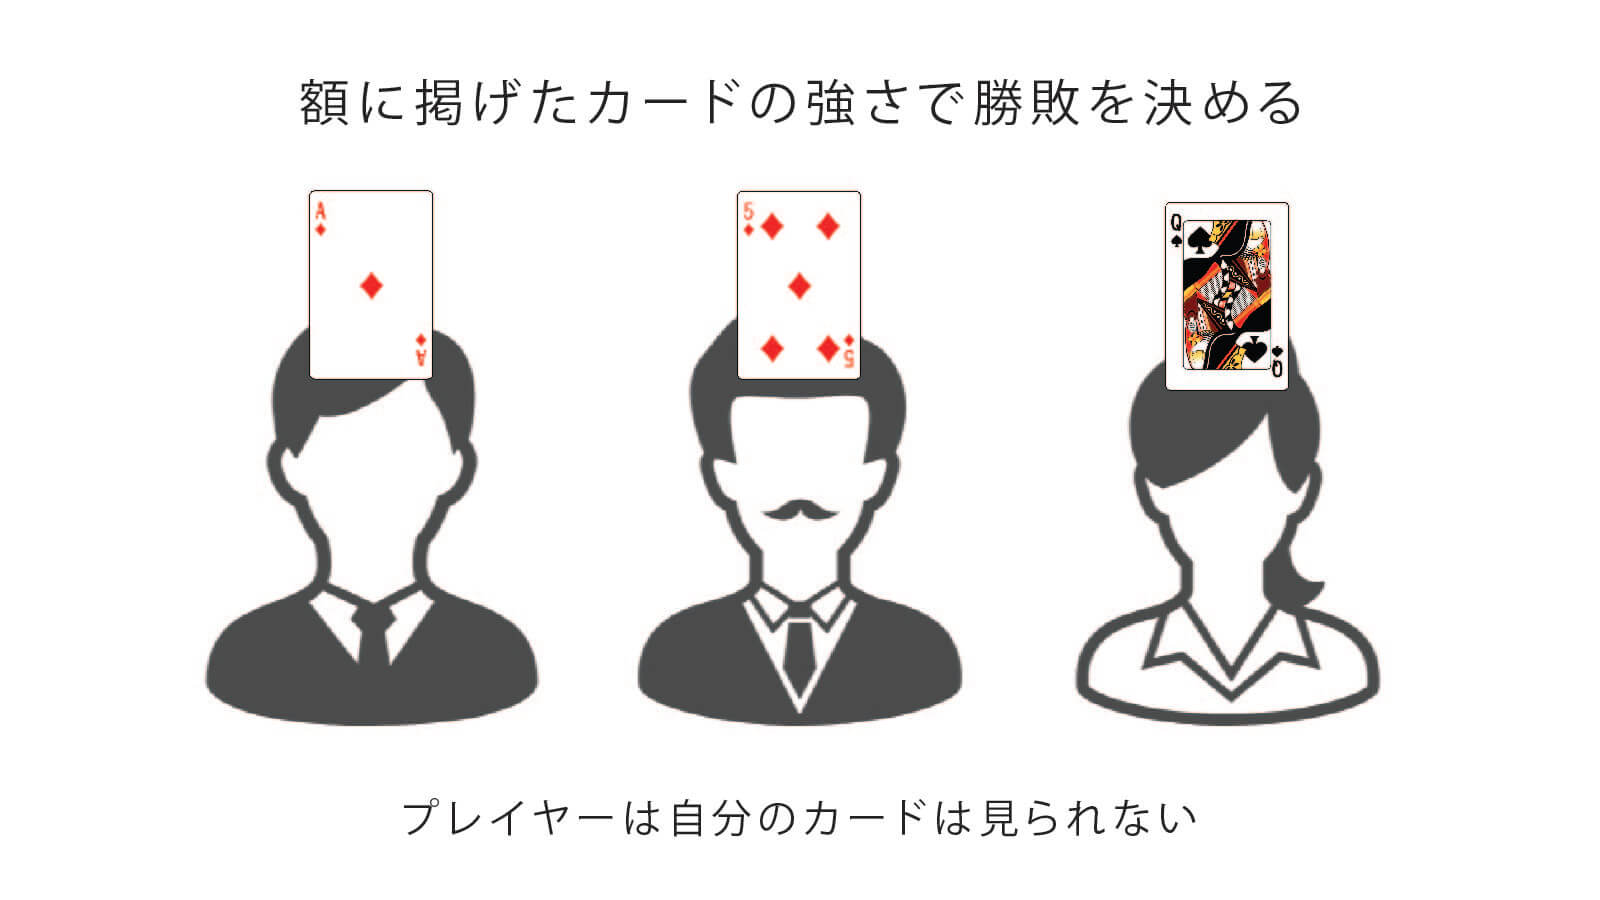 額に掲げたカードの強さで勝敗を決めるプレイヤーは自分のカードは見られない